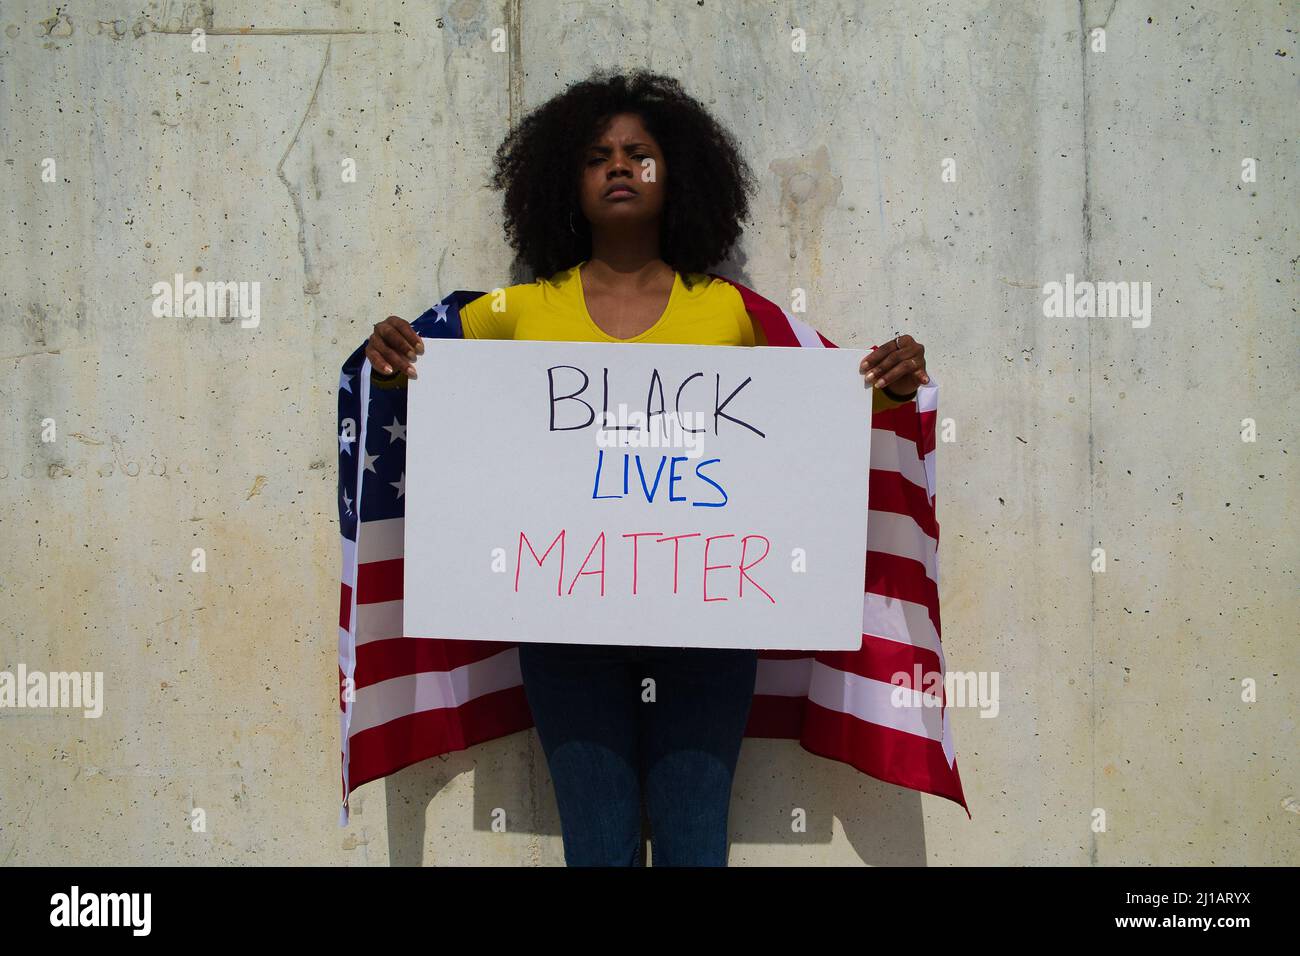 Una donna afroamericana tiene una materia nera della vita nelle sue mani e la bandiera degli stati uniti sopra la sua spalla. In sfondo grigio parete Foto Stock